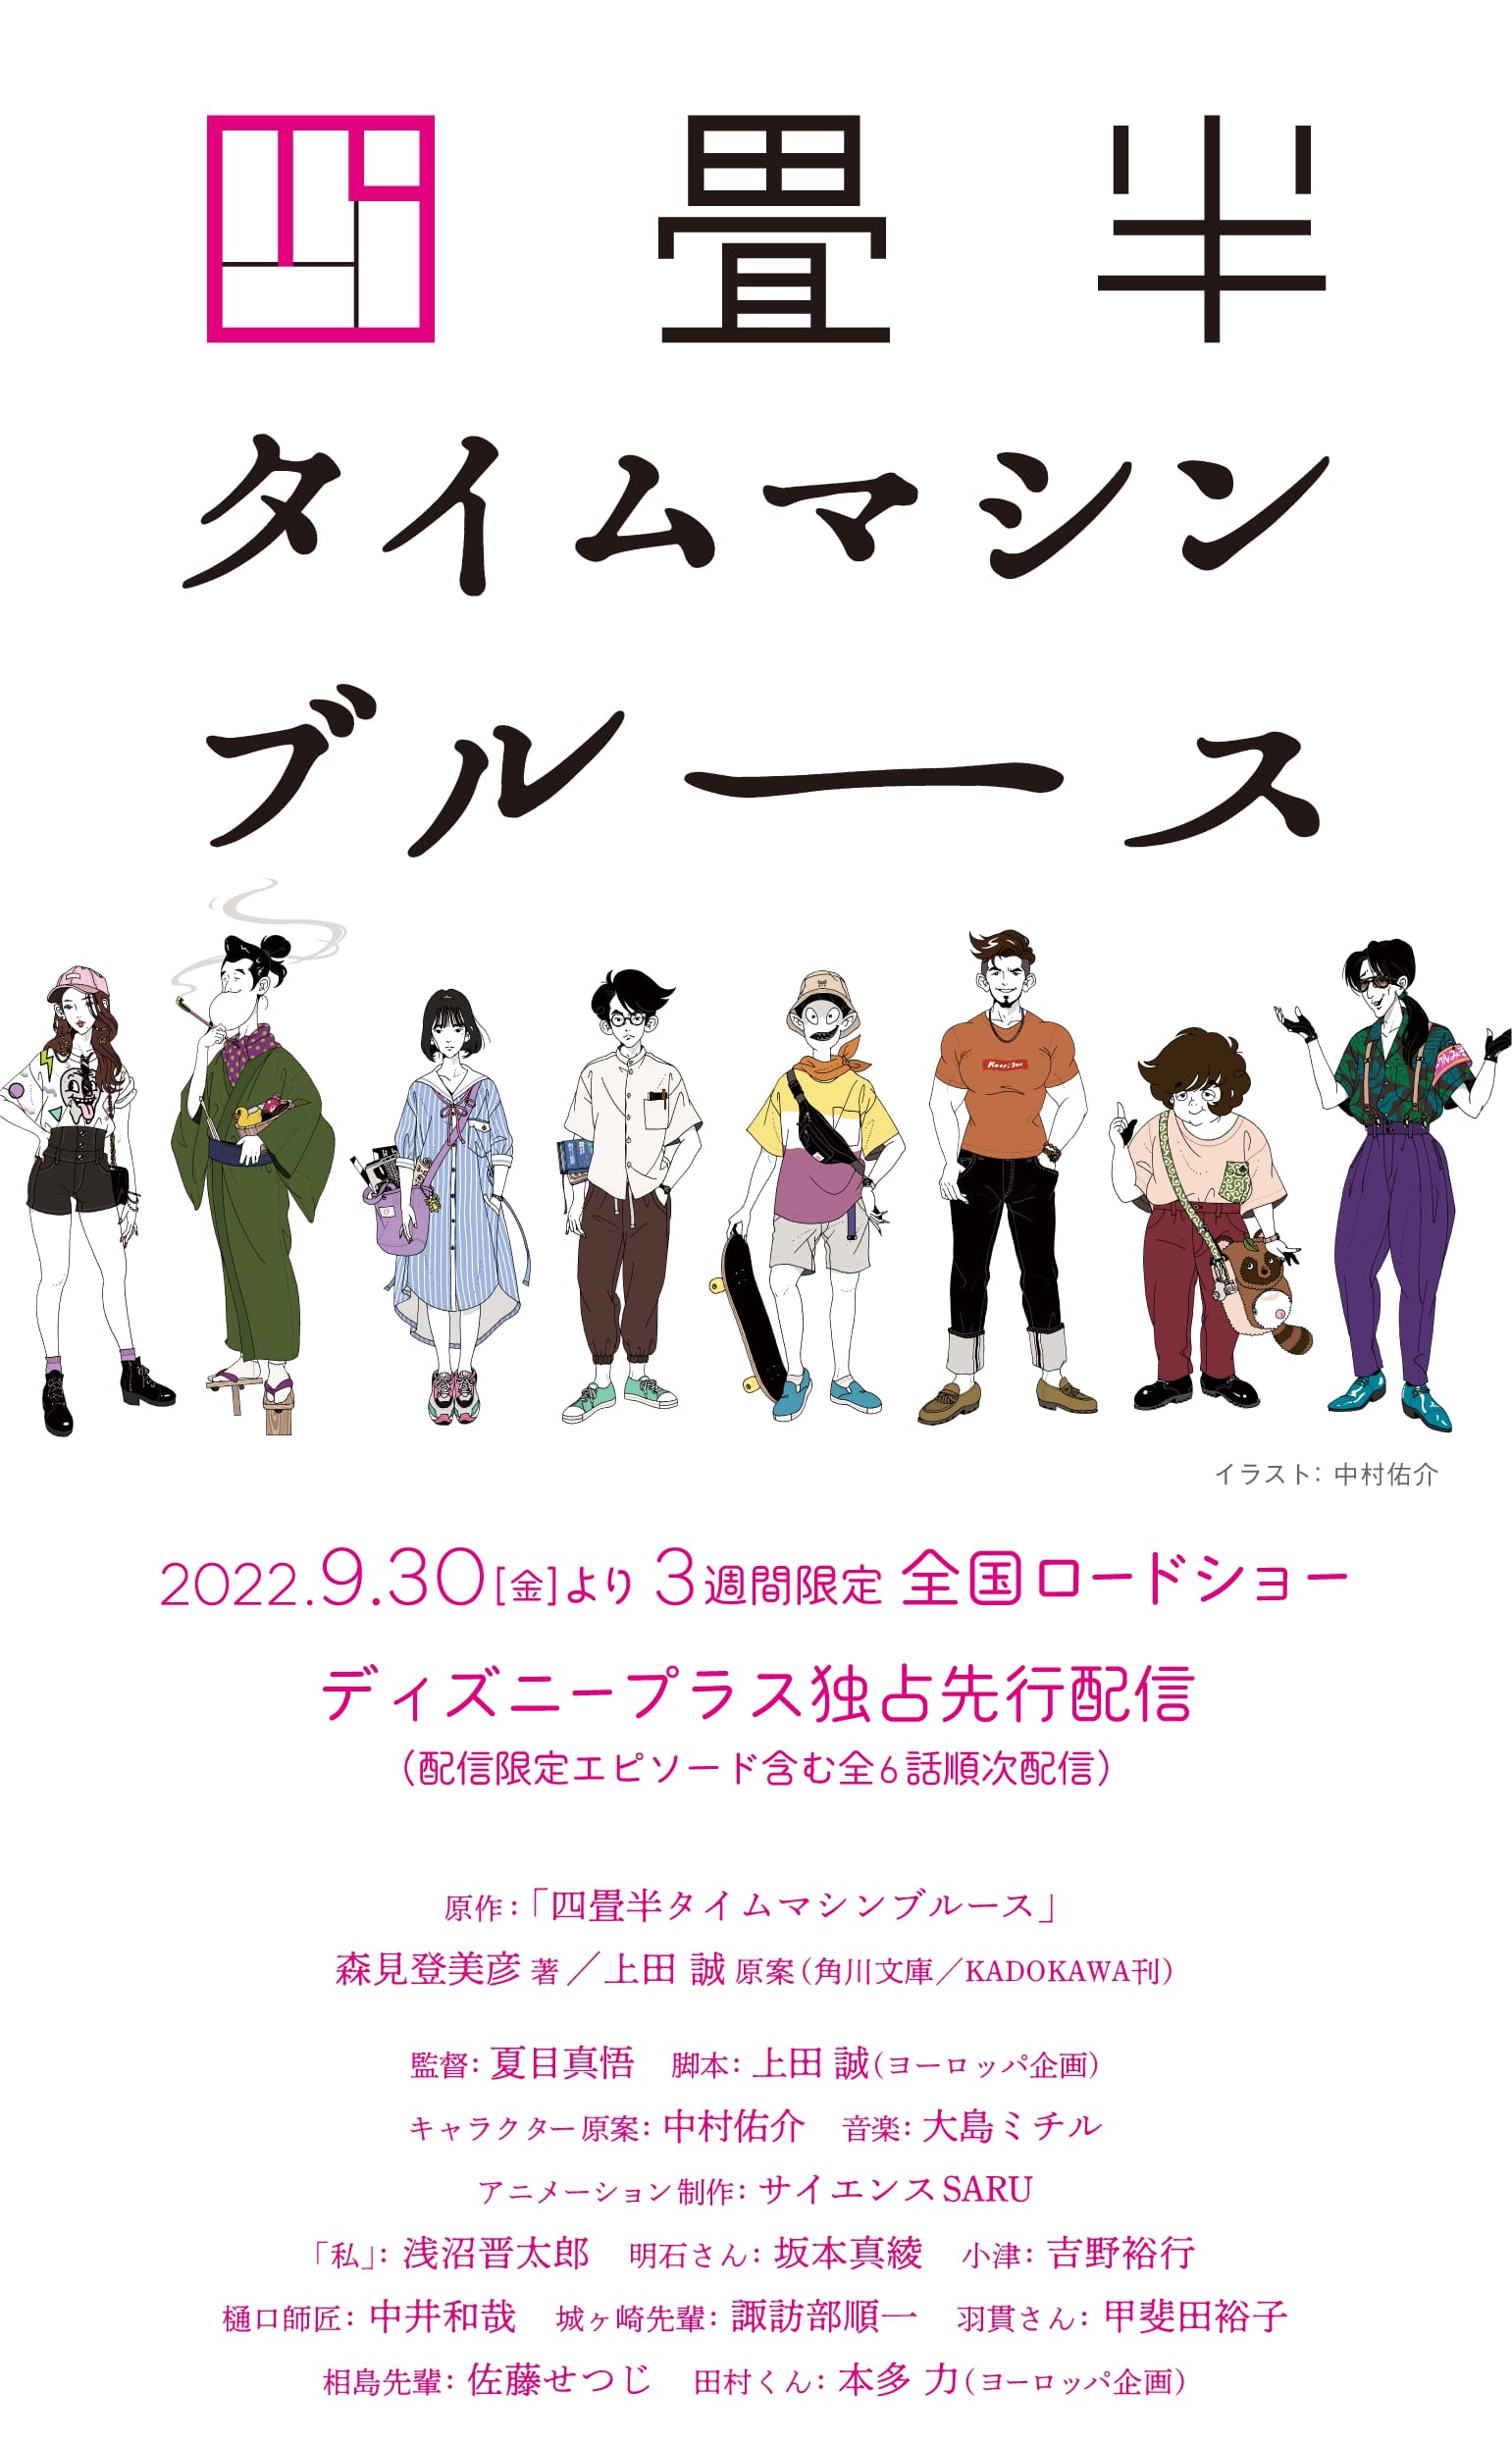 Prepare to Tolerate Ozu’s Lunacy in New ‘Tatami Time Machine Blues’ Anime